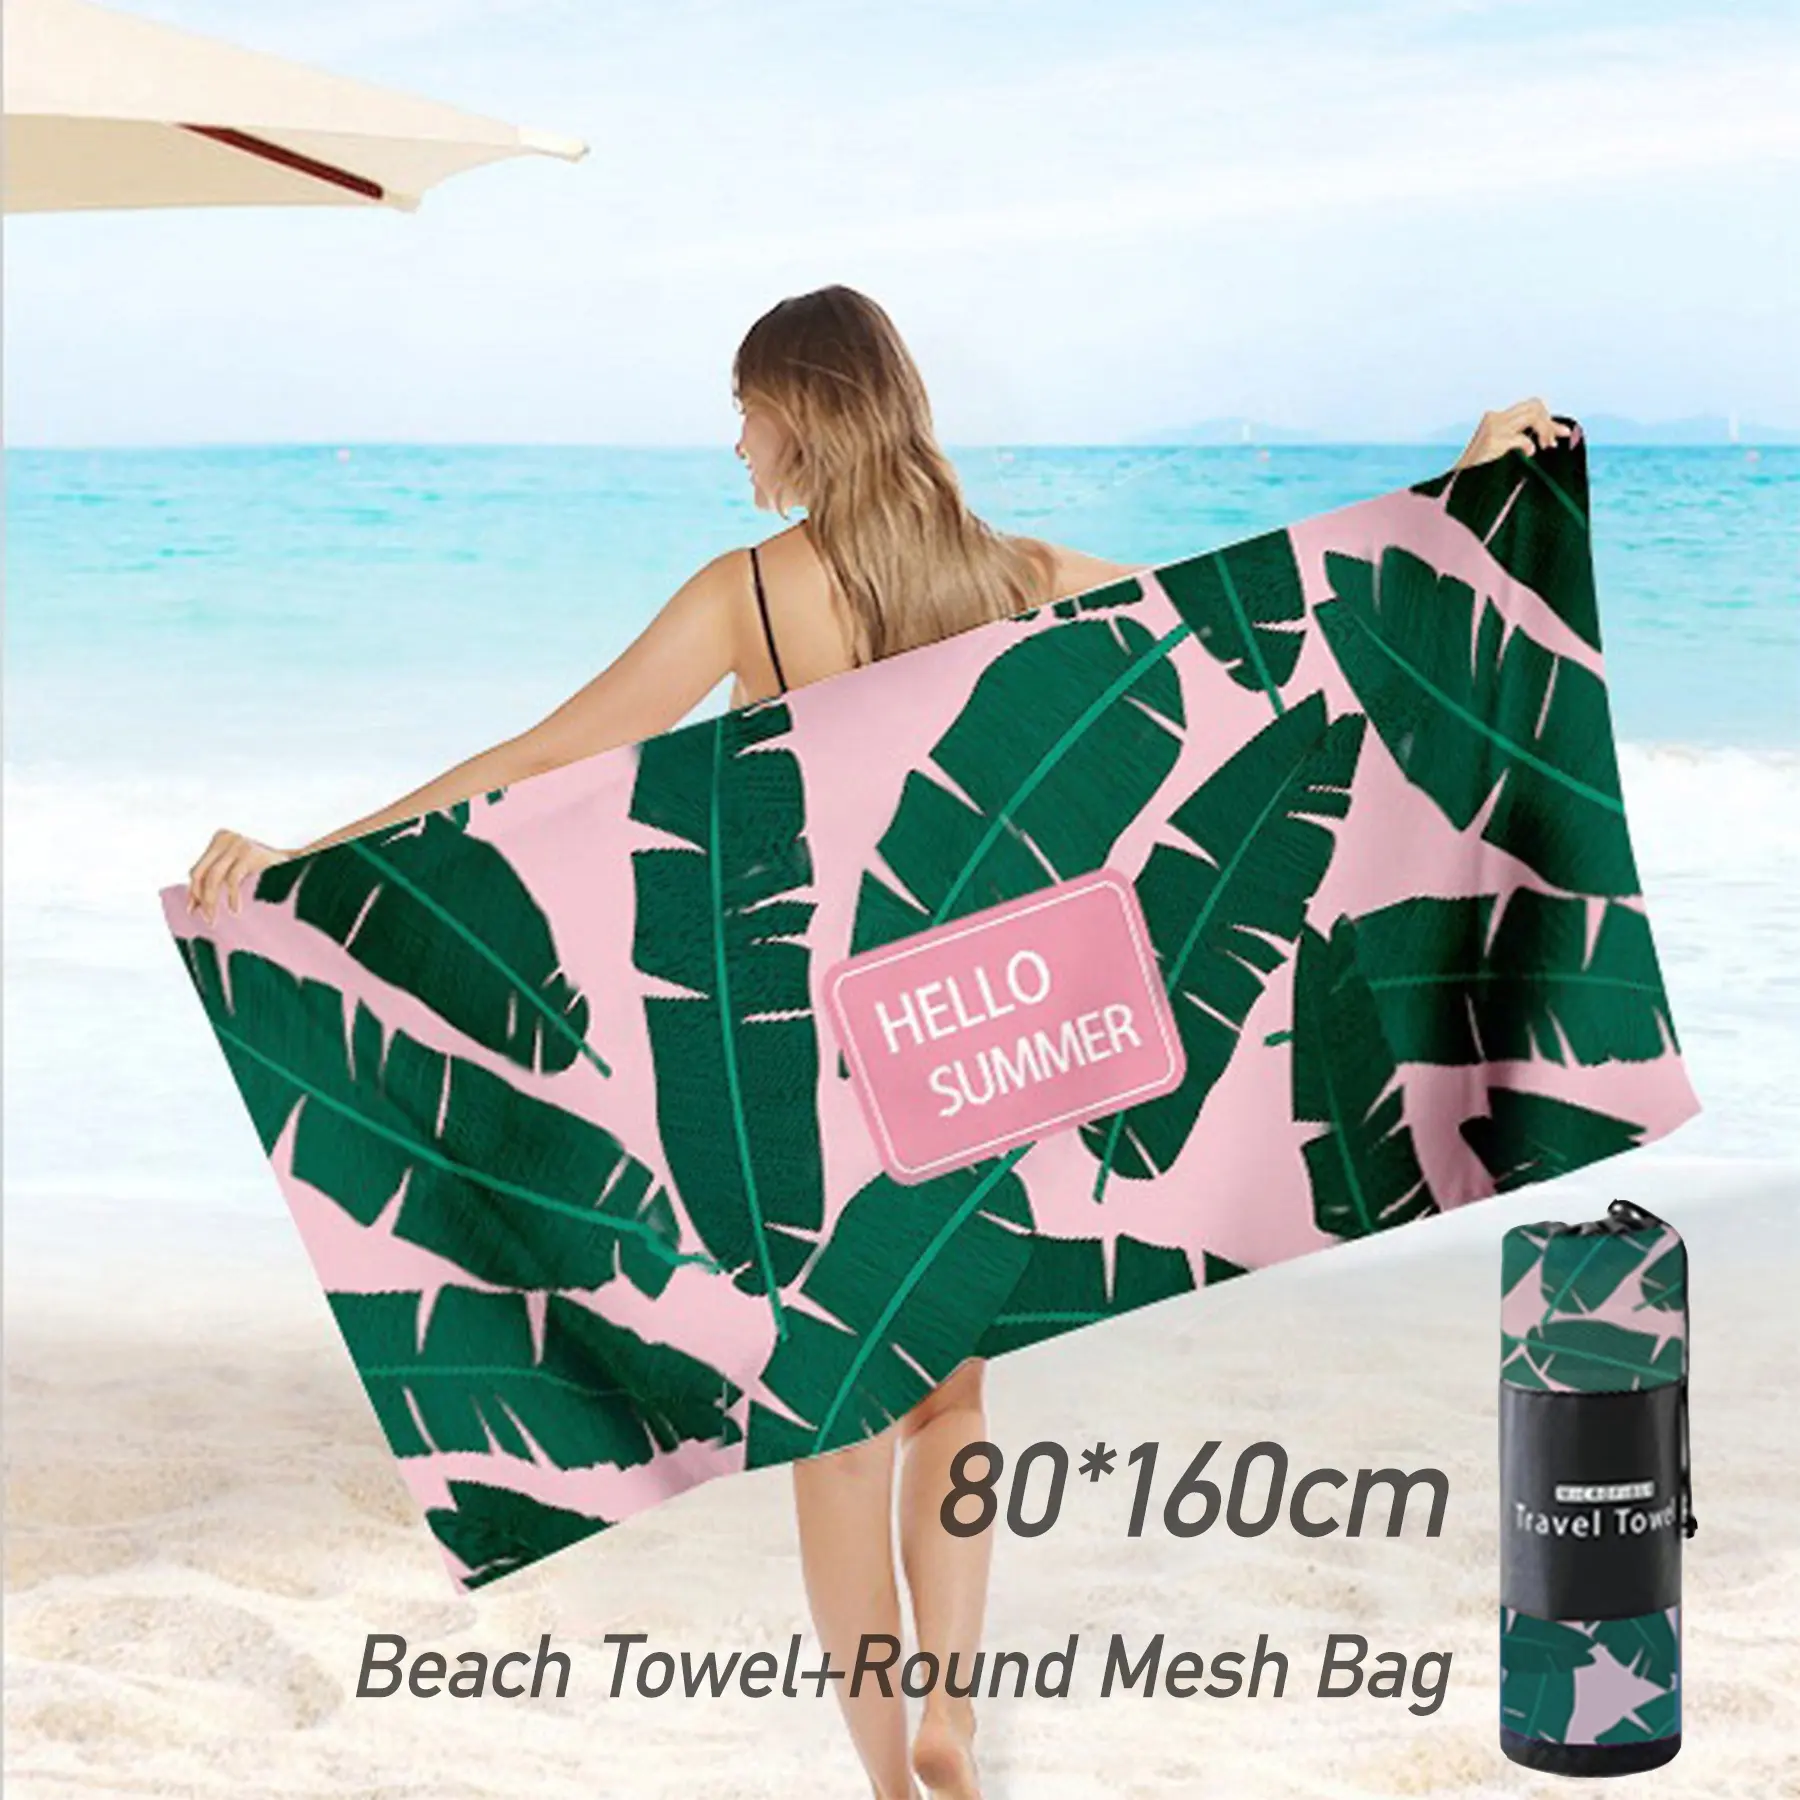 メッシュバッグ付き低MOQ軽量80 * 160cm大型マイクロファイバーパームサンドレスビーチタオル